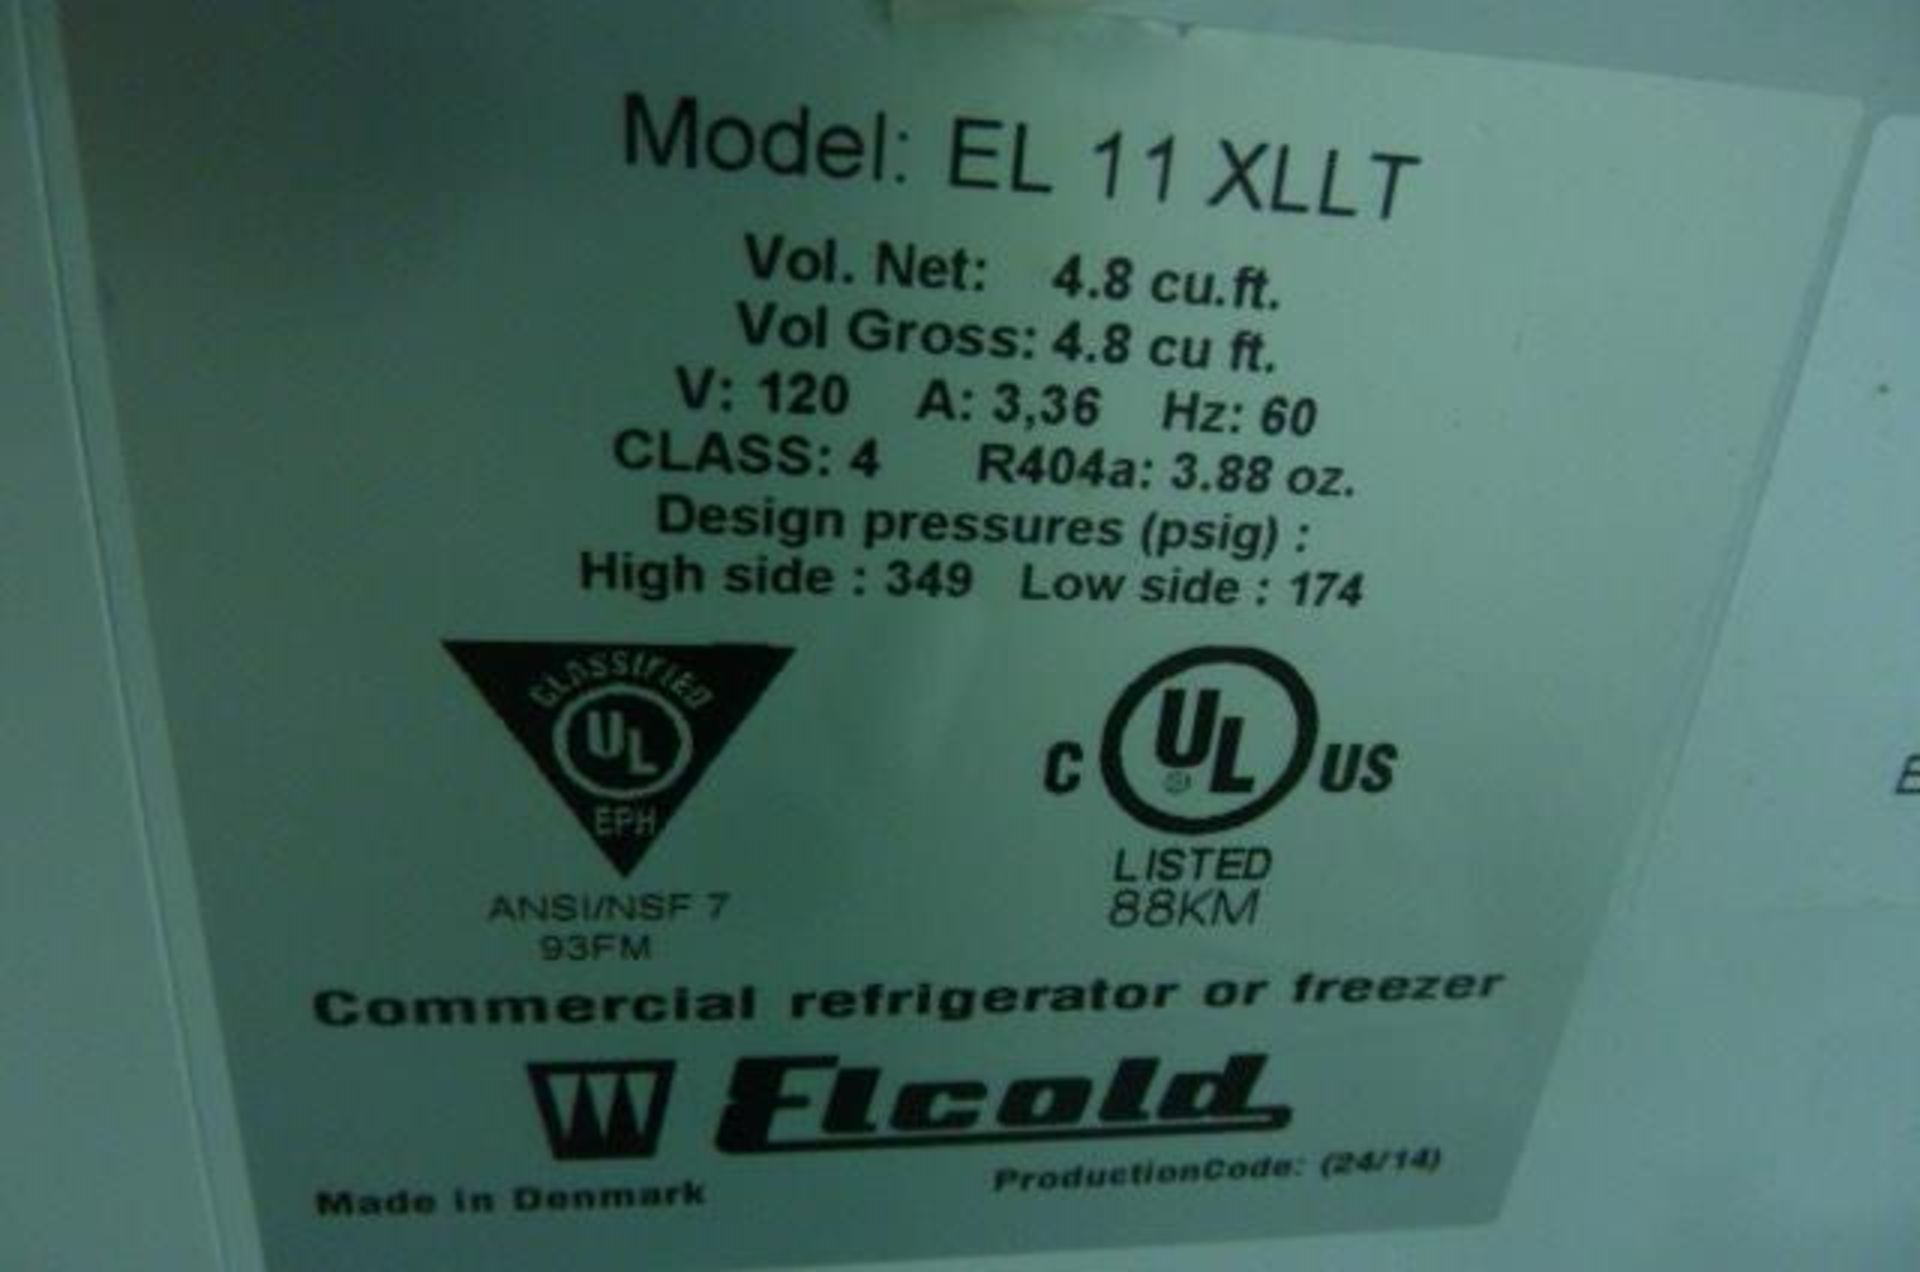 Elcold Md. EL 11XLLT, 4.8 cu. Ft., Type UNi11 - Image 4 of 6